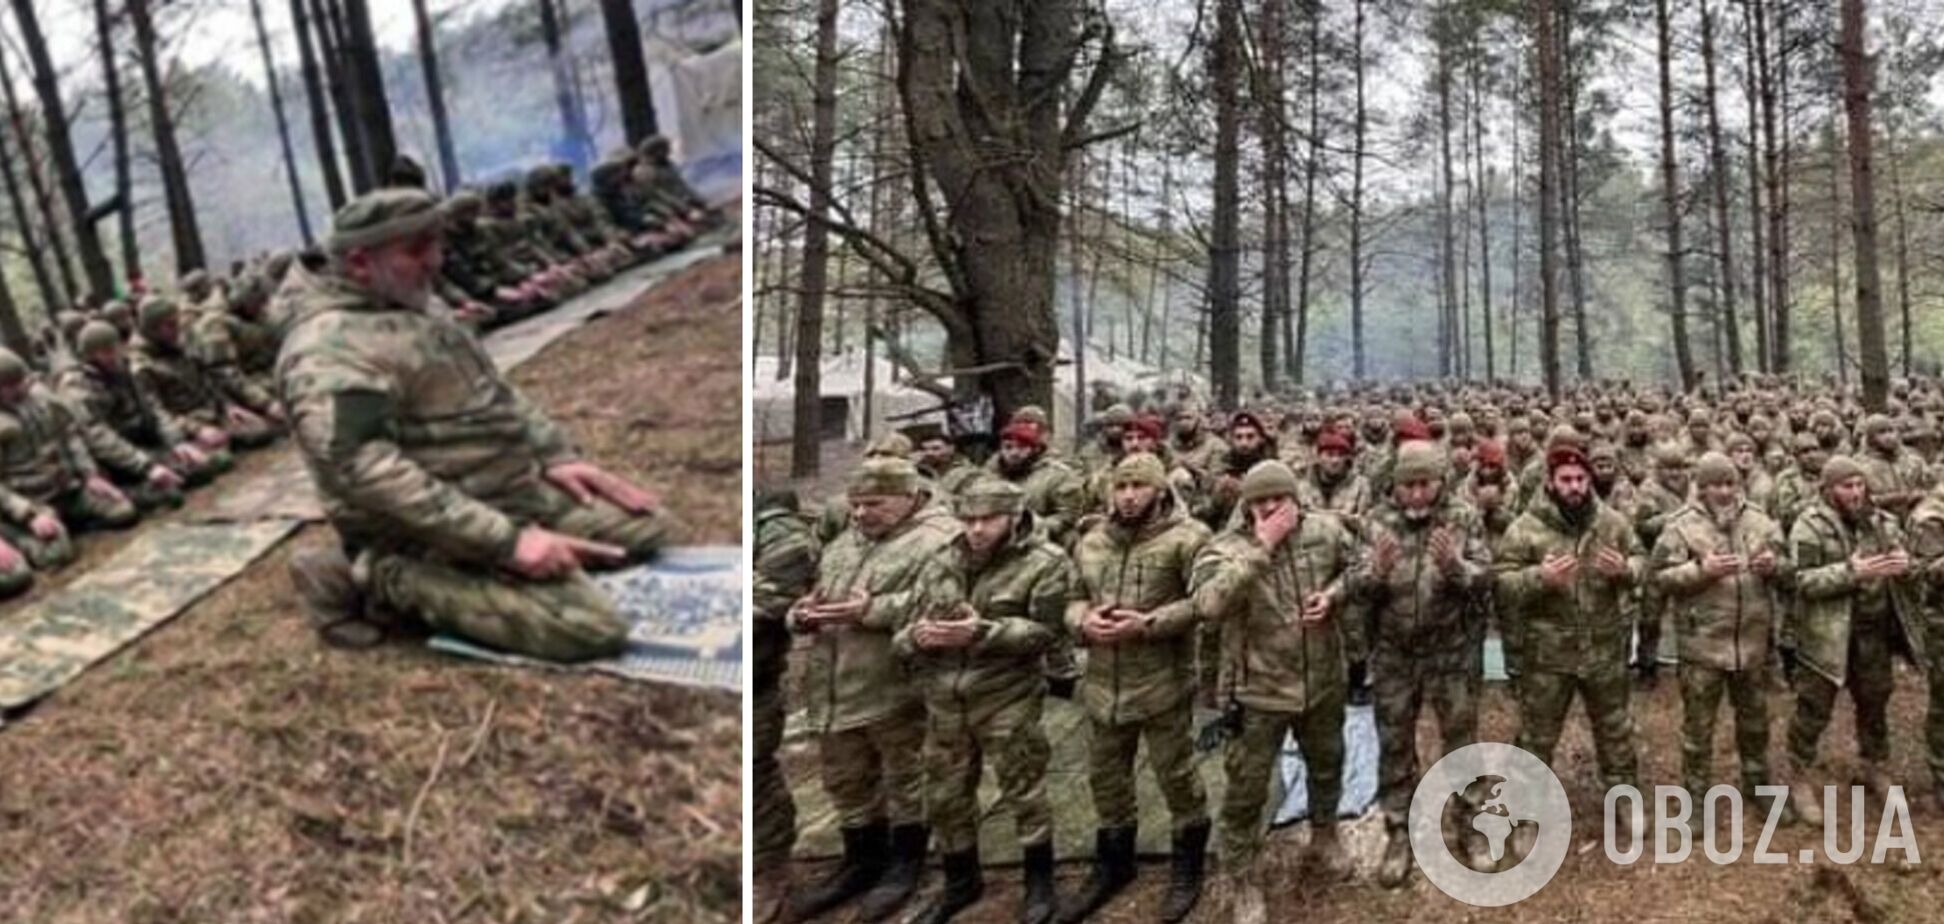 ЗСУ 'денацифікували' більш як 70 чеченців із полку, який вчиняв звірства проти українців у Маріуполі та на окупованому Запоріжжі. Фото